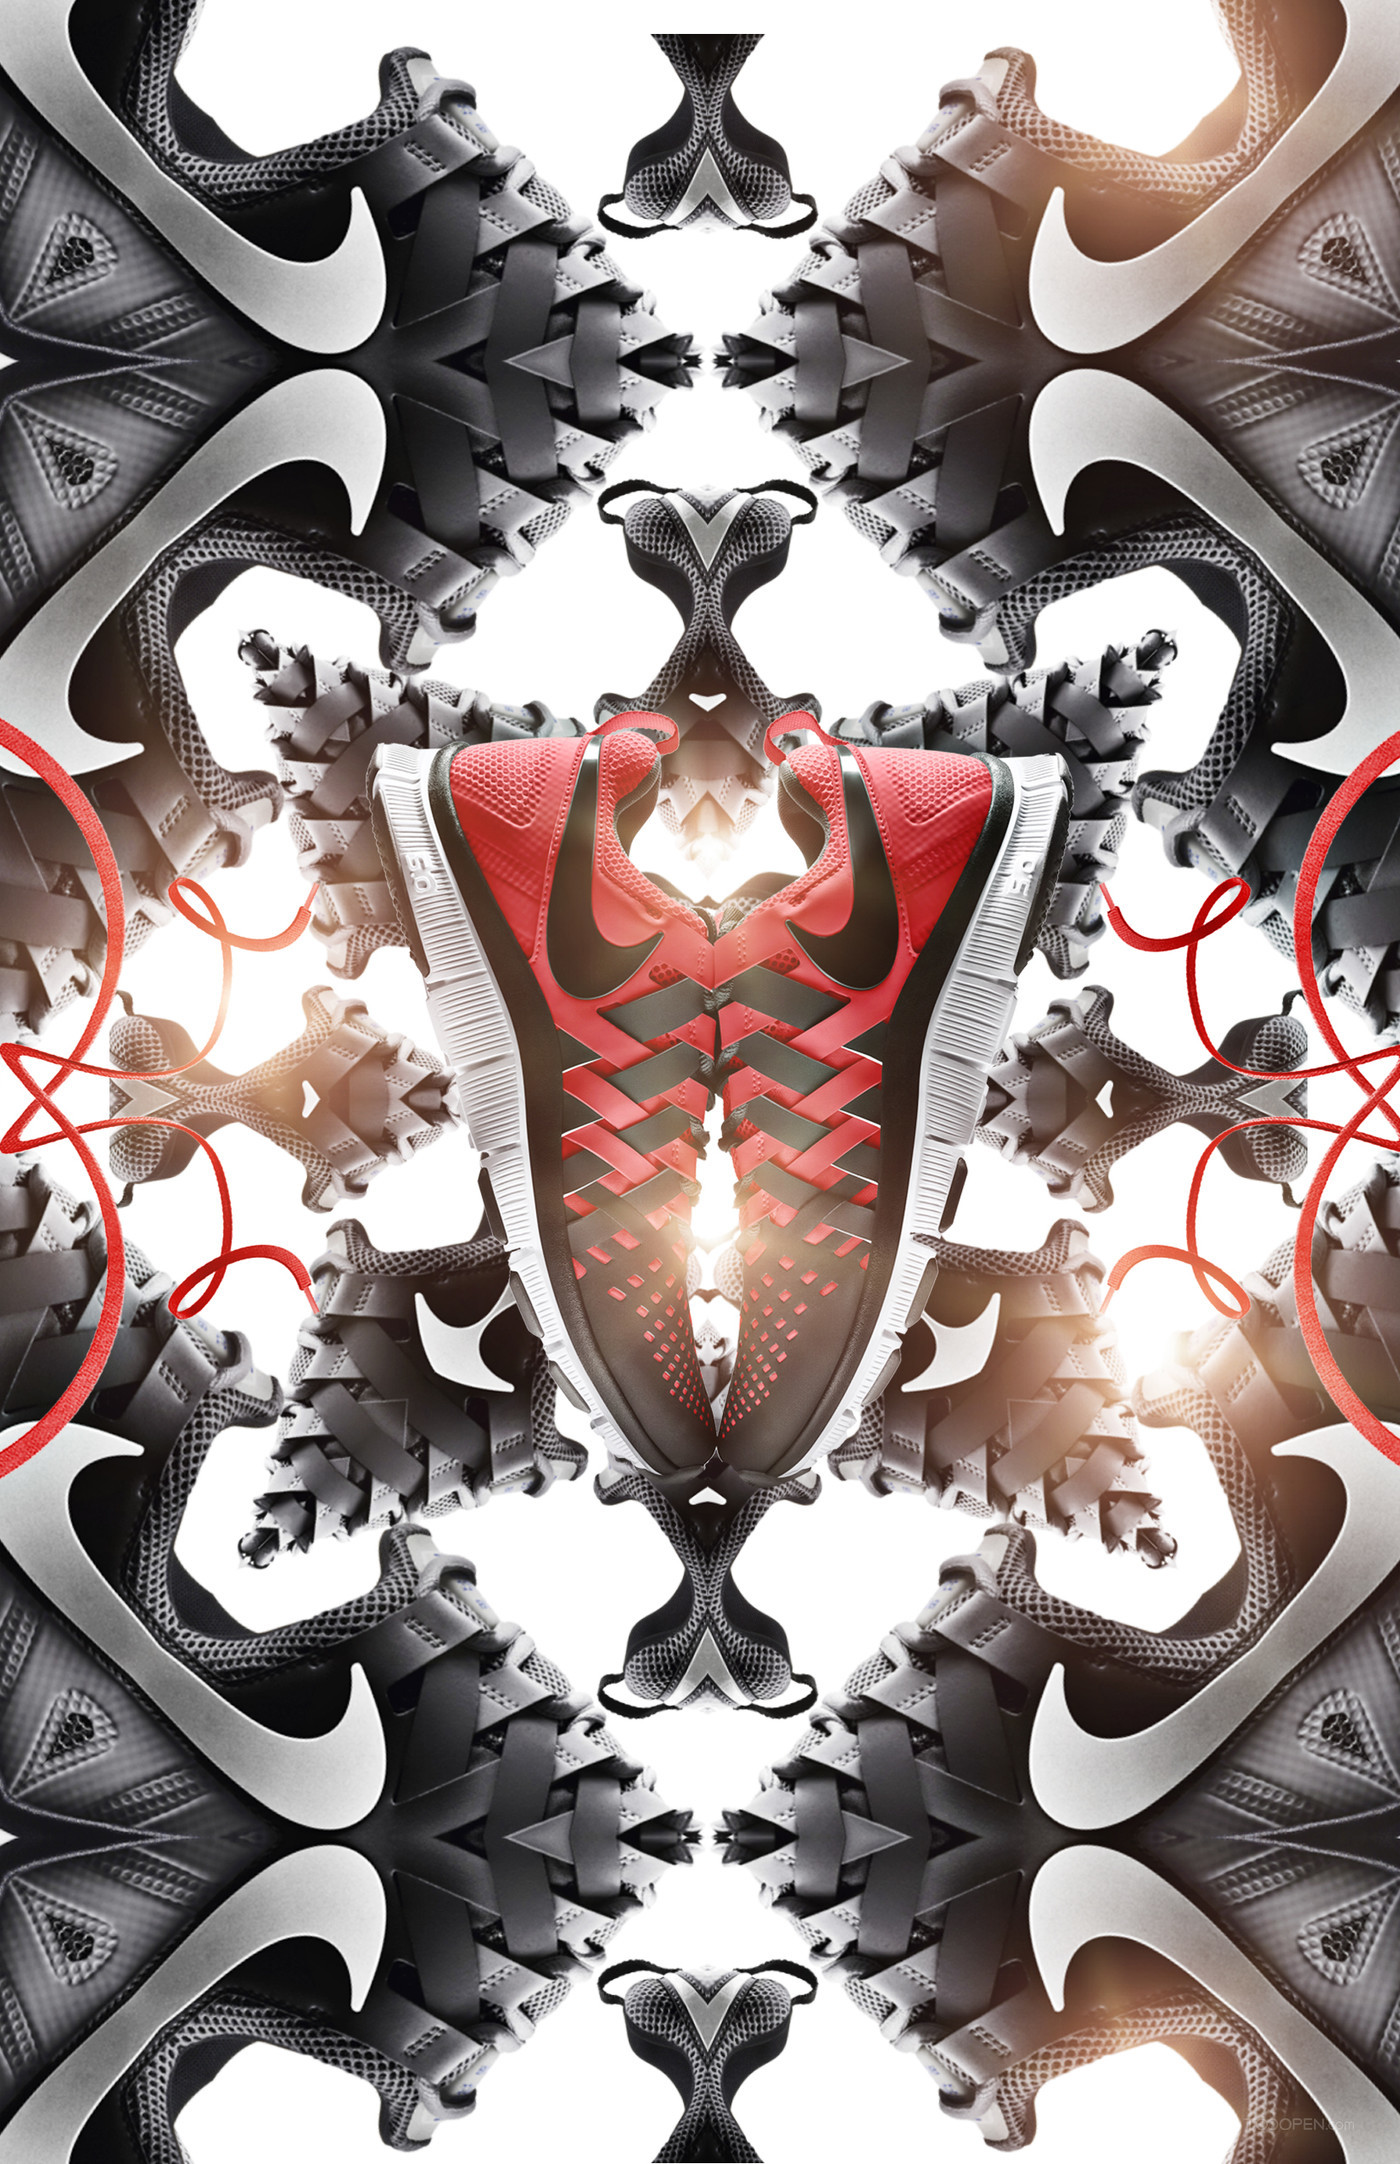 耐克运动鞋创意万花筒广告海报设计欣赏-06